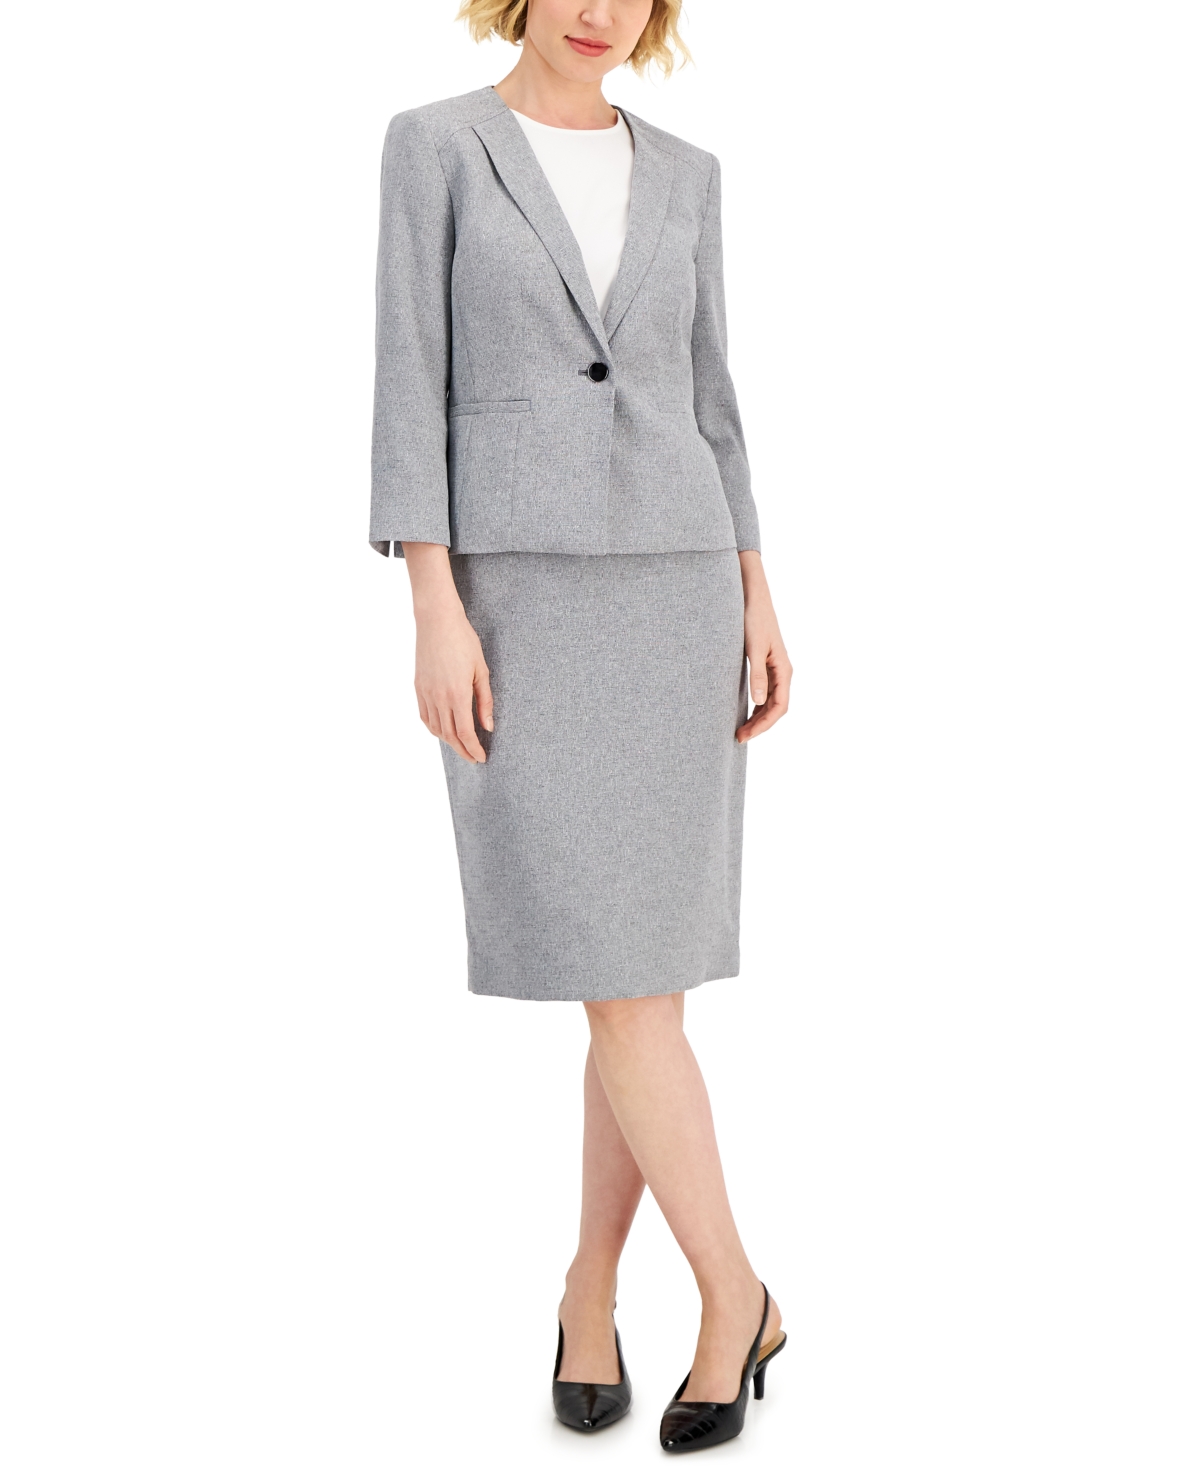 LE SUIT Deep Rose Multi Sz 16 Women's Skirt Suit $200 New 